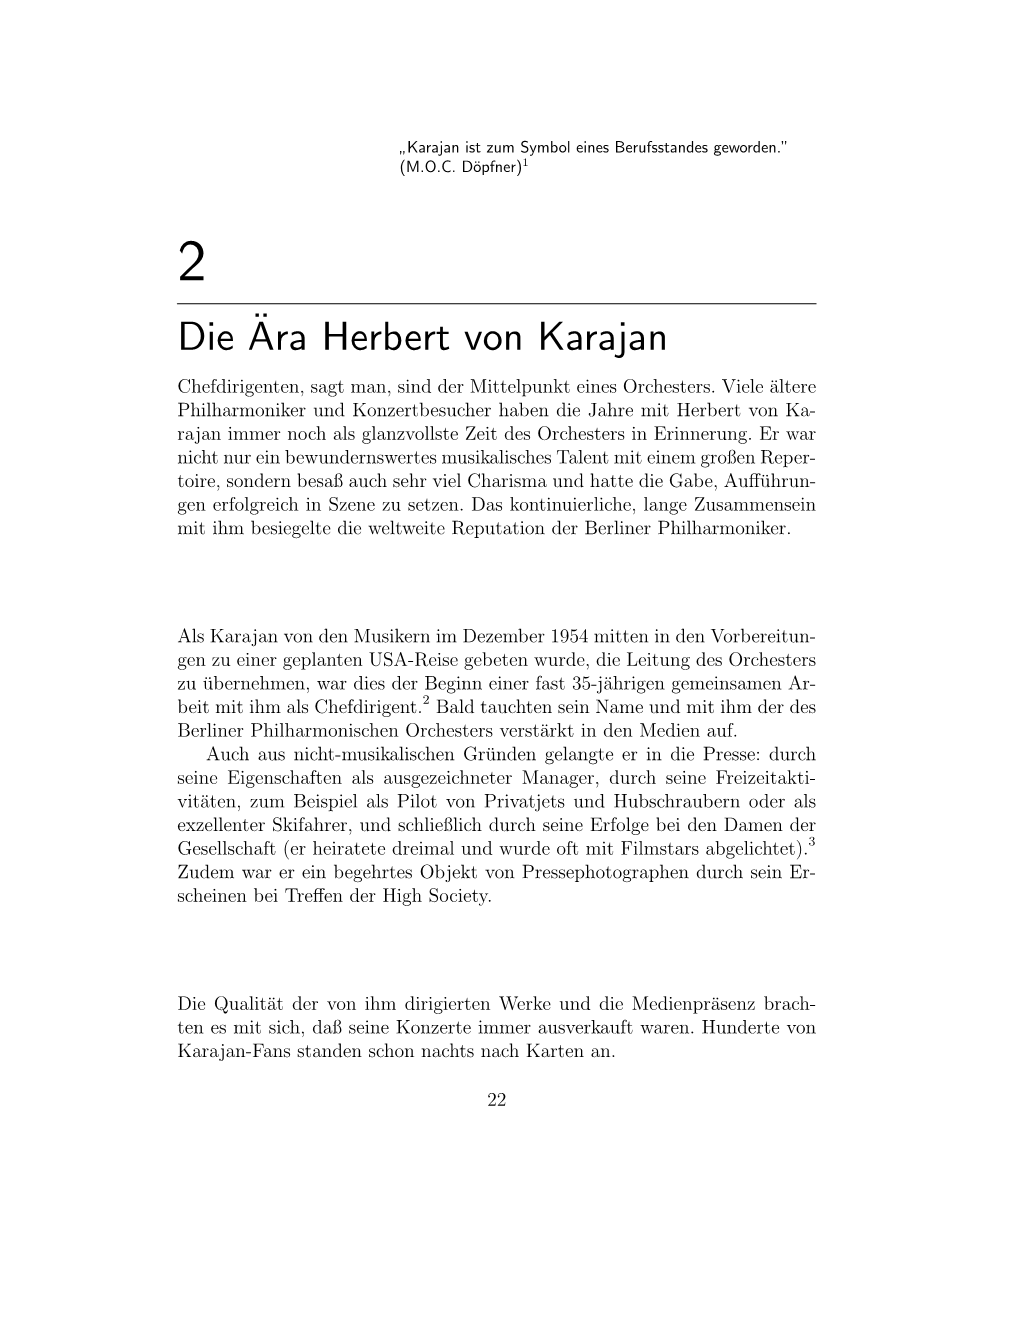 Die¨Ara Herbert Von Karajan